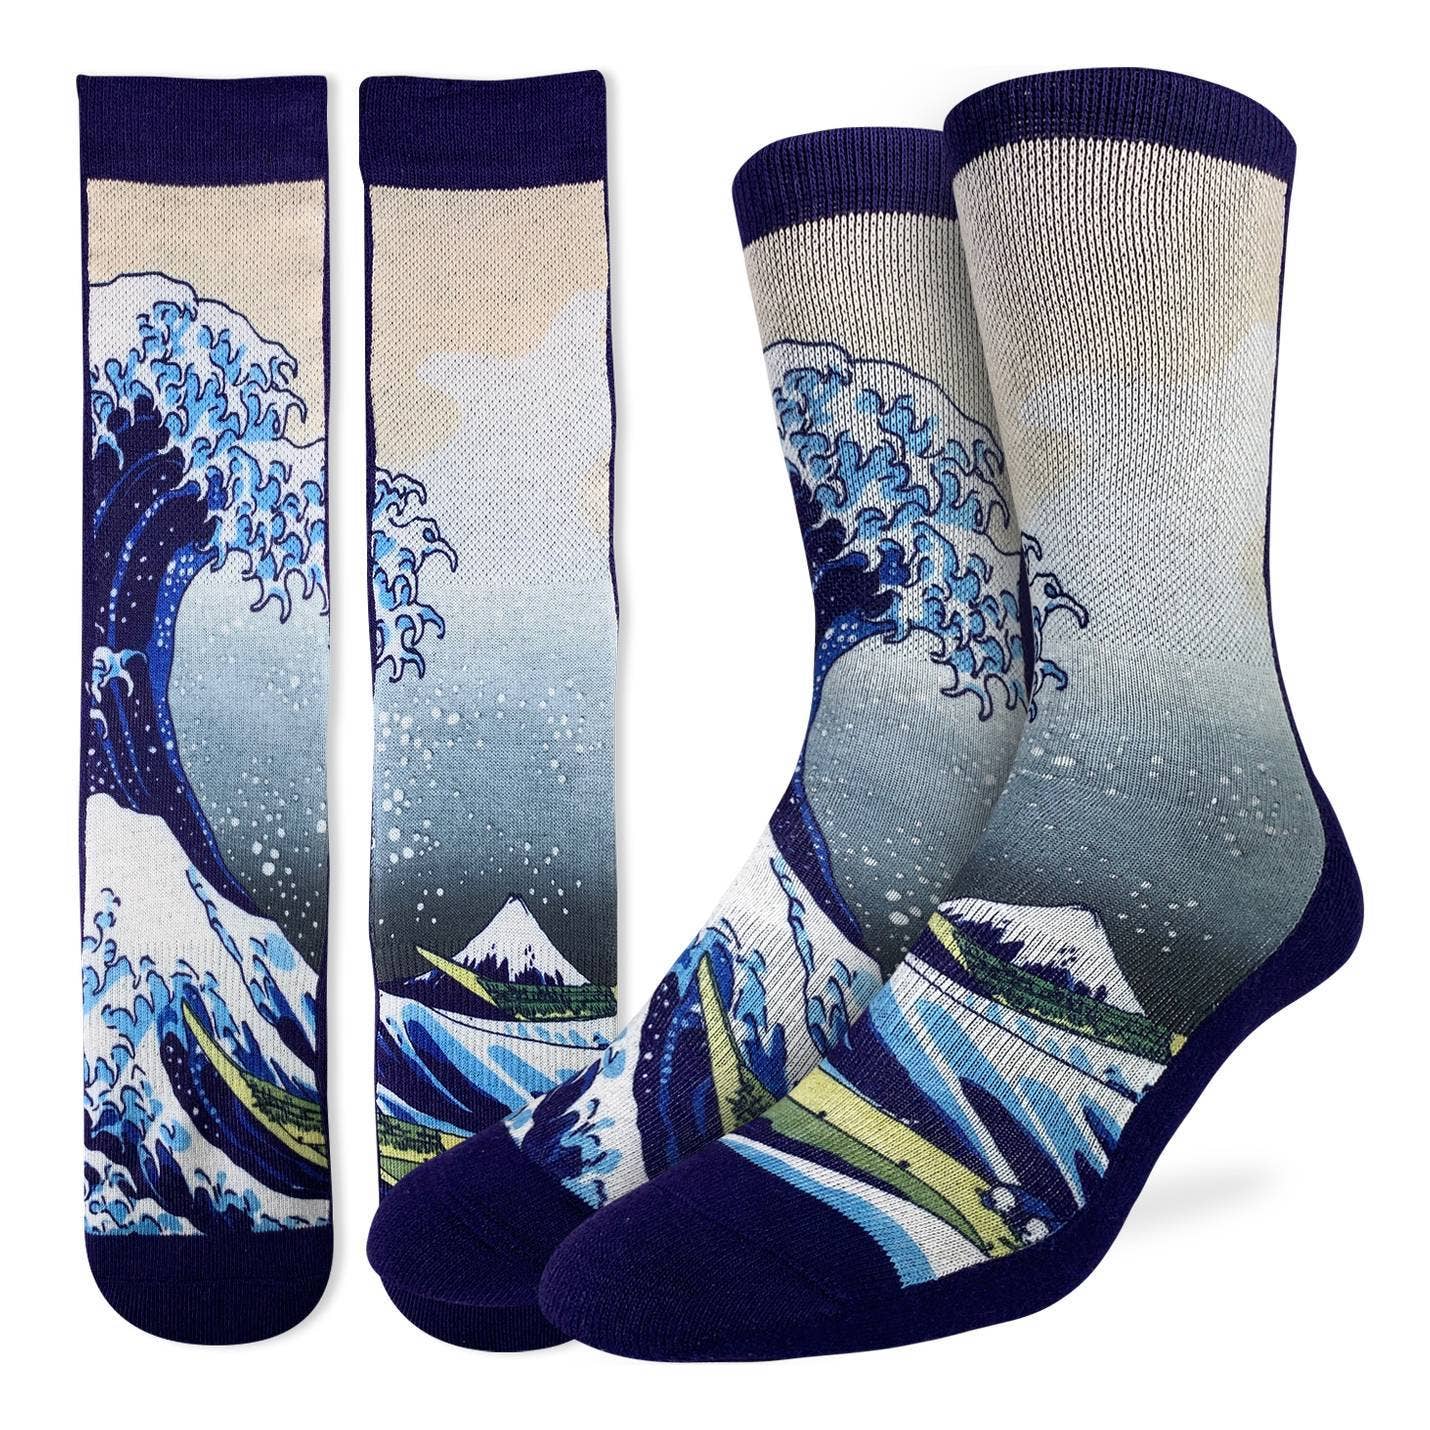 Men's The Great Wave off Kanagawa Socks - La De Da